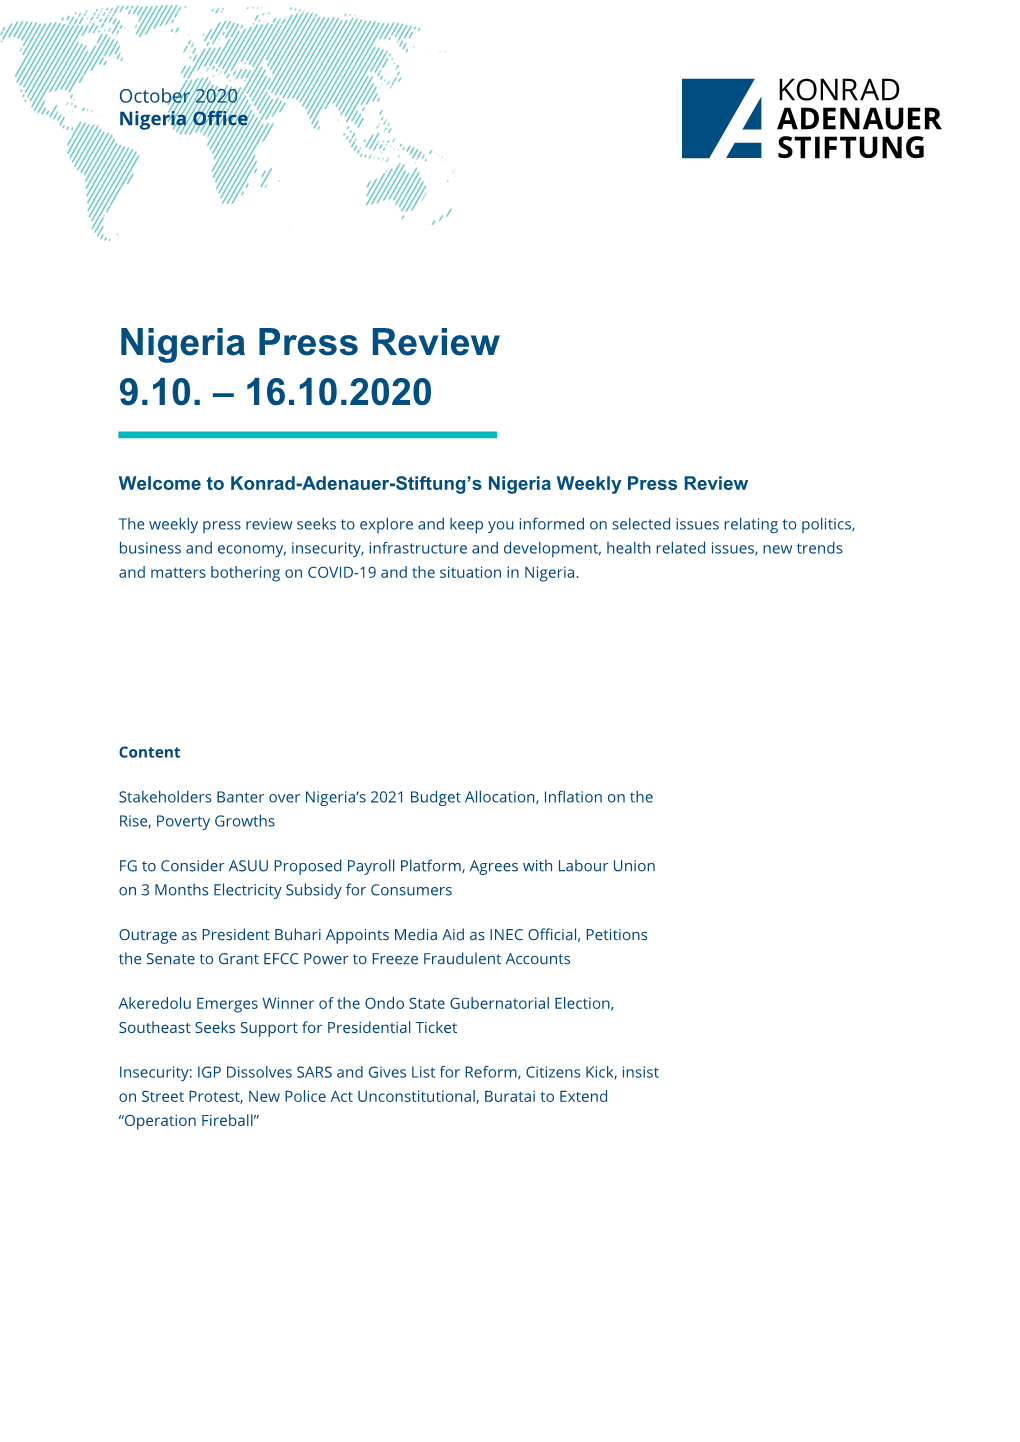 Nigeria Press Review 9.10. – 16.10.2020